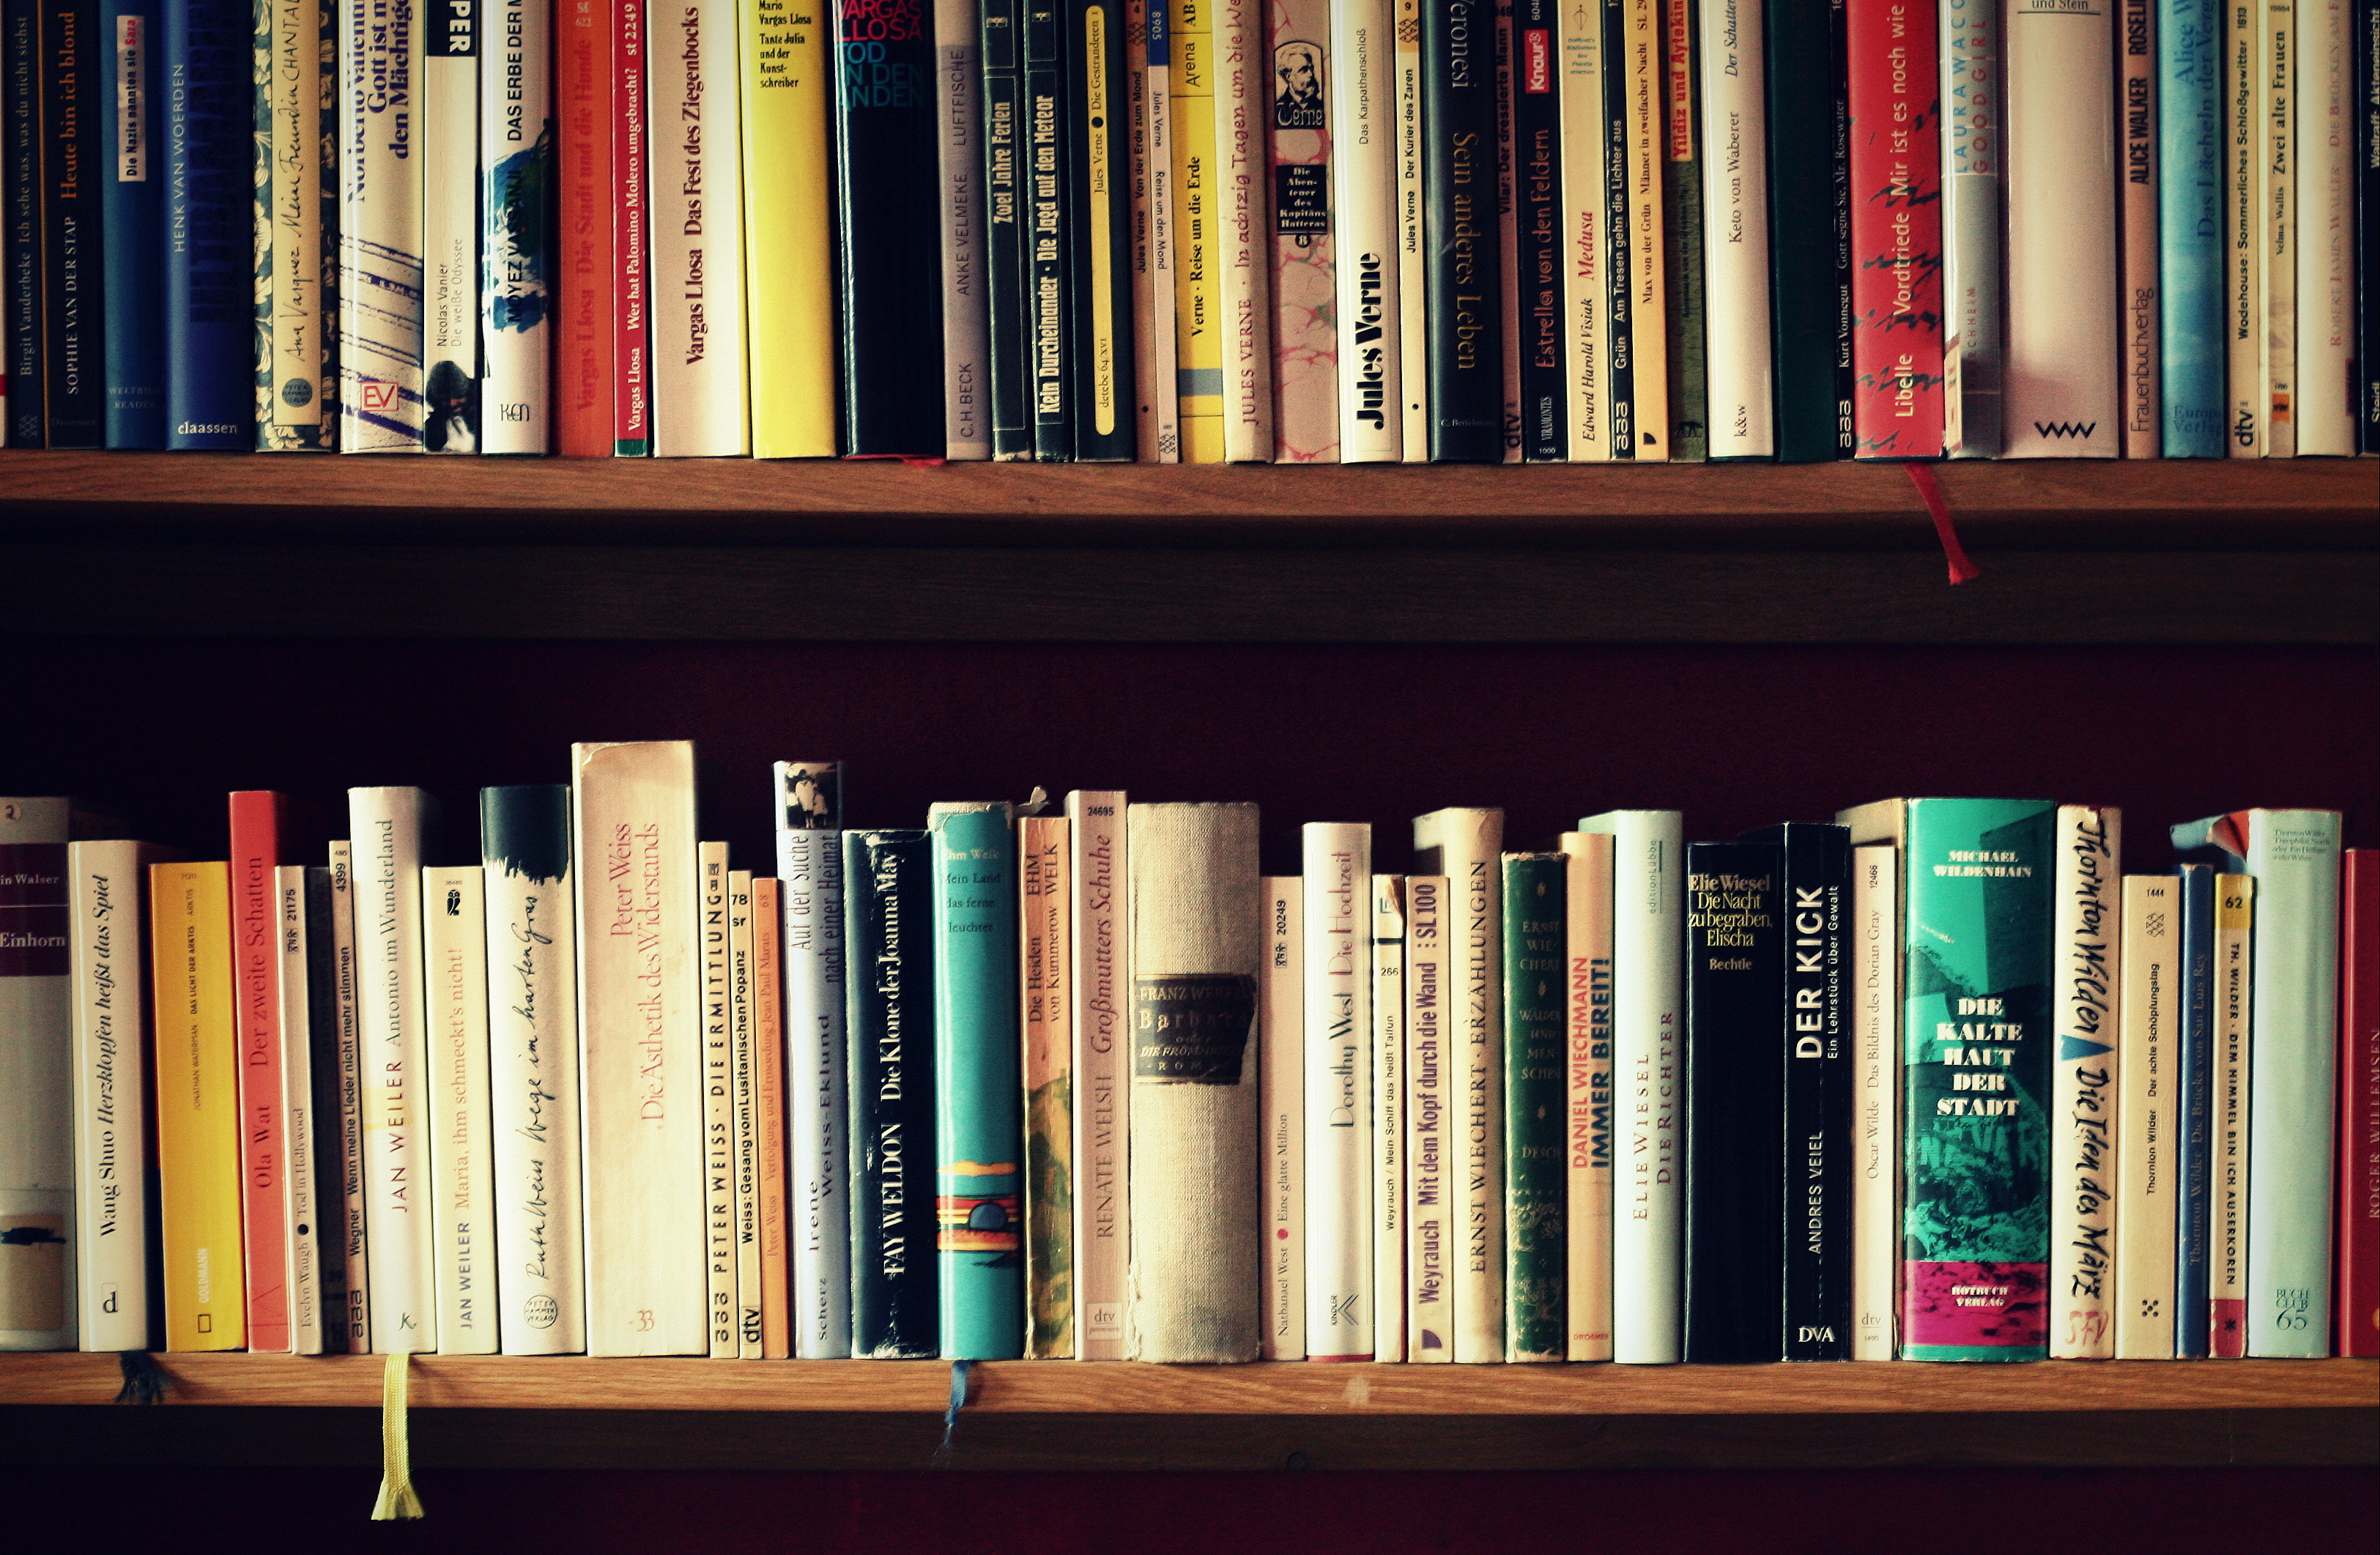 Foto: Ein Bücherregal mit mehreren Buchrücken.